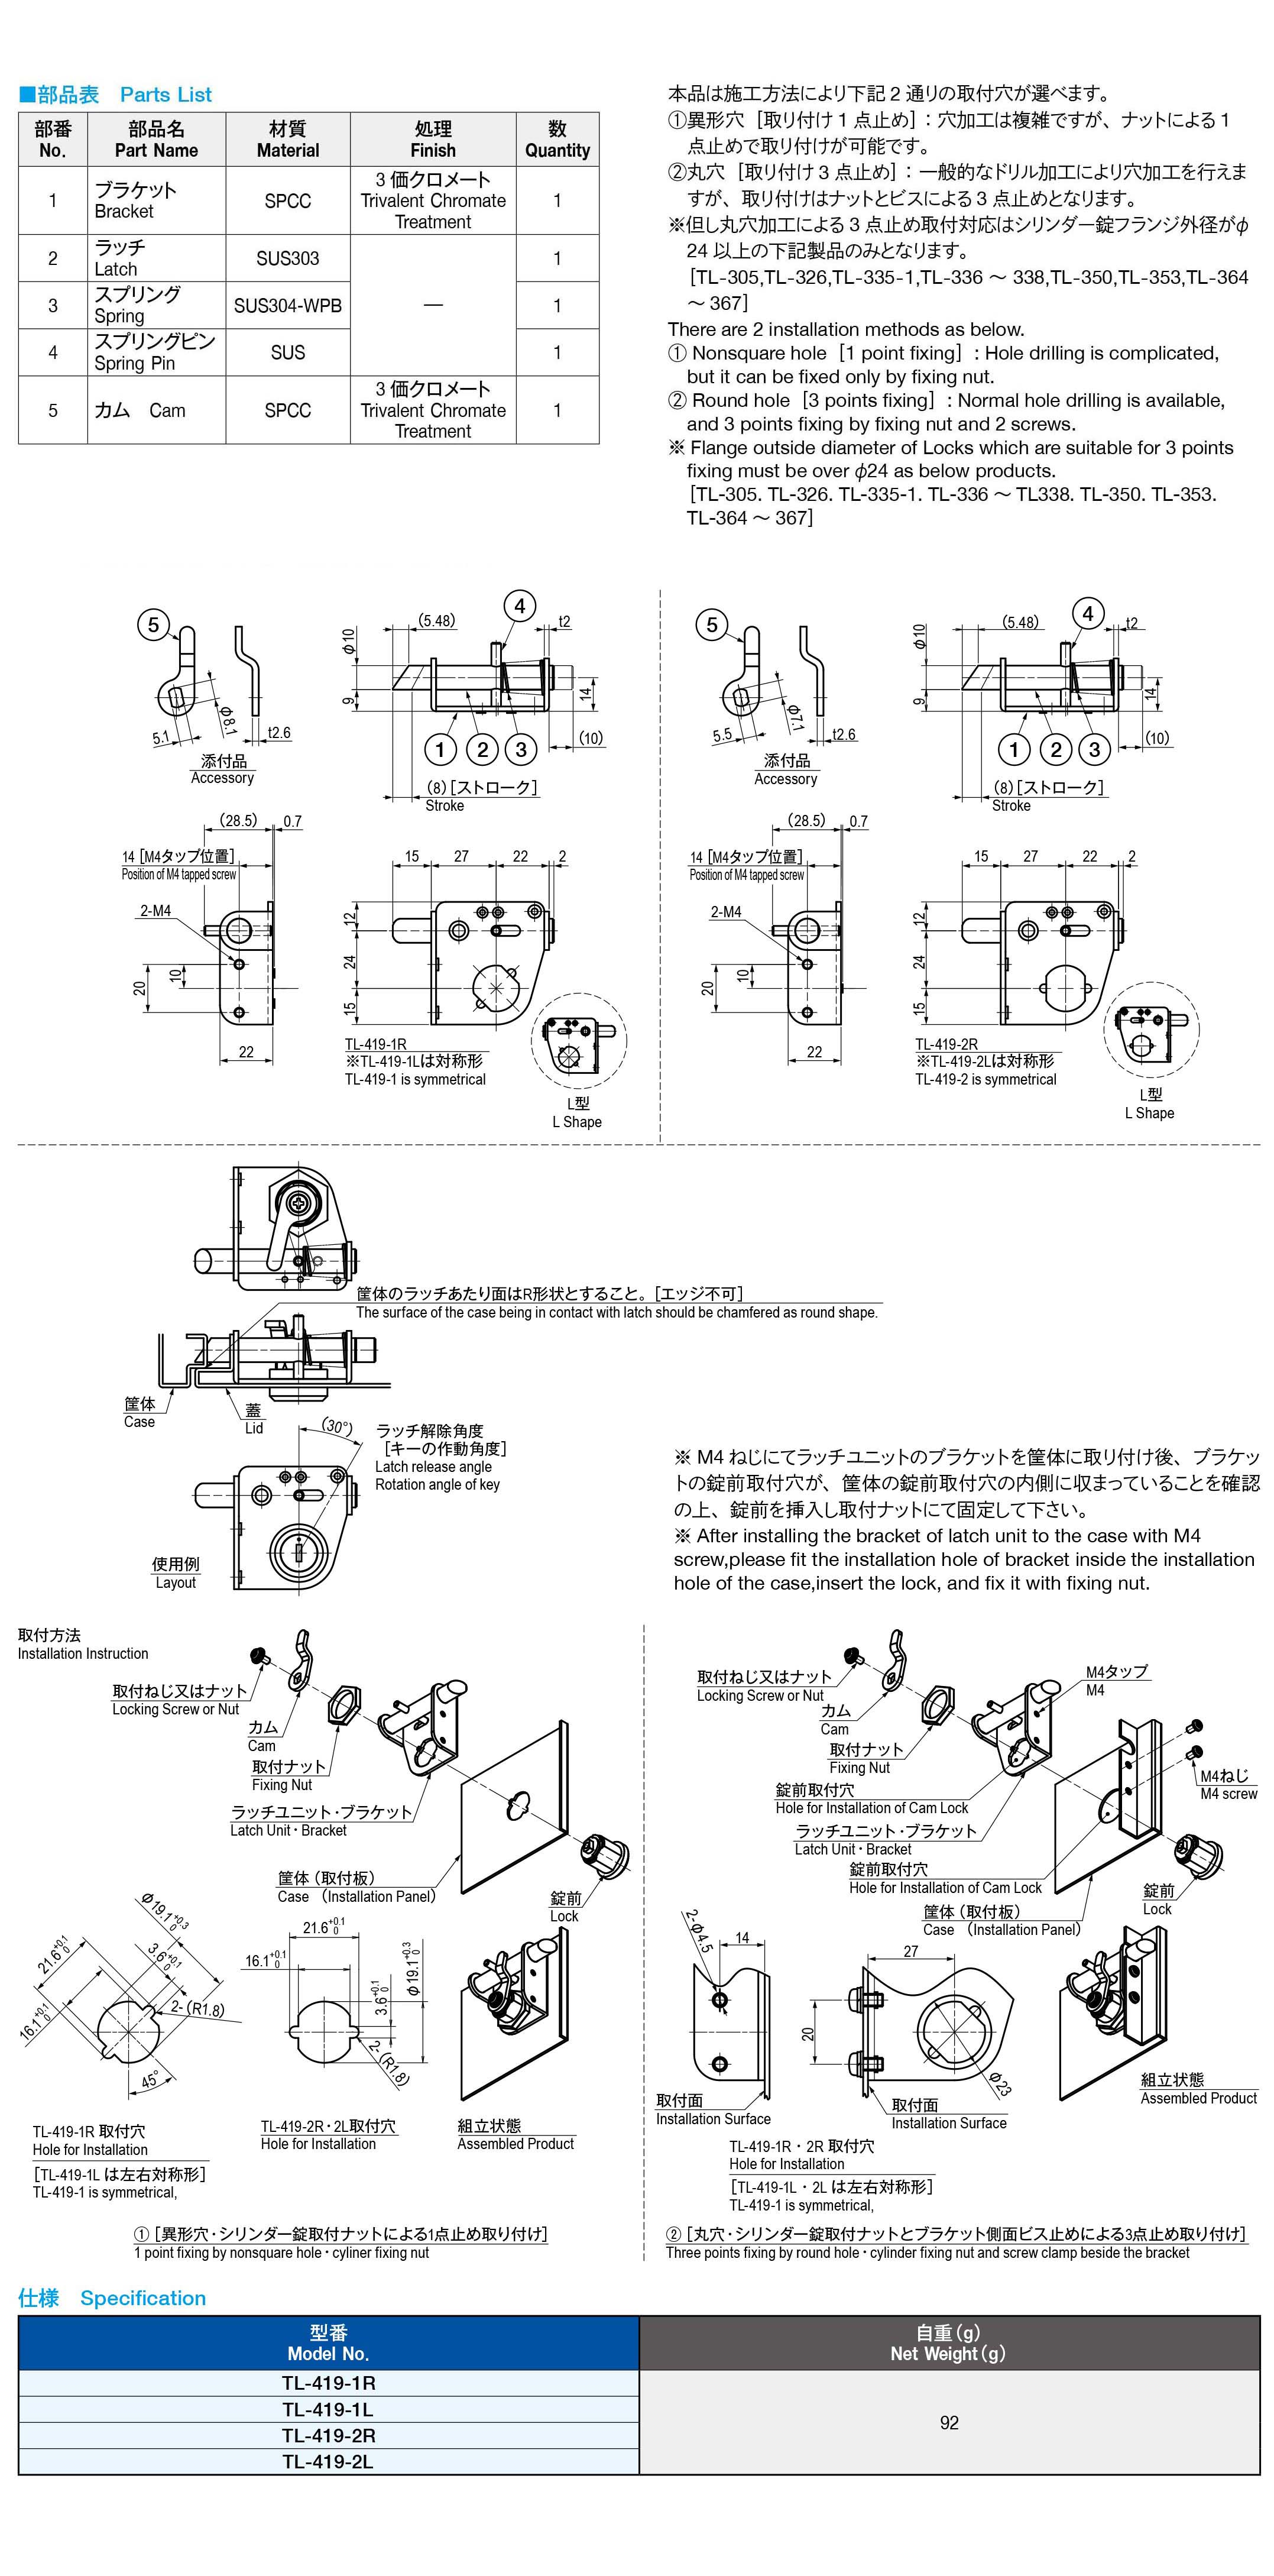 栃木屋EC_シリンダー錠用ラッチロックユニット: キャッチ・ラッチ 